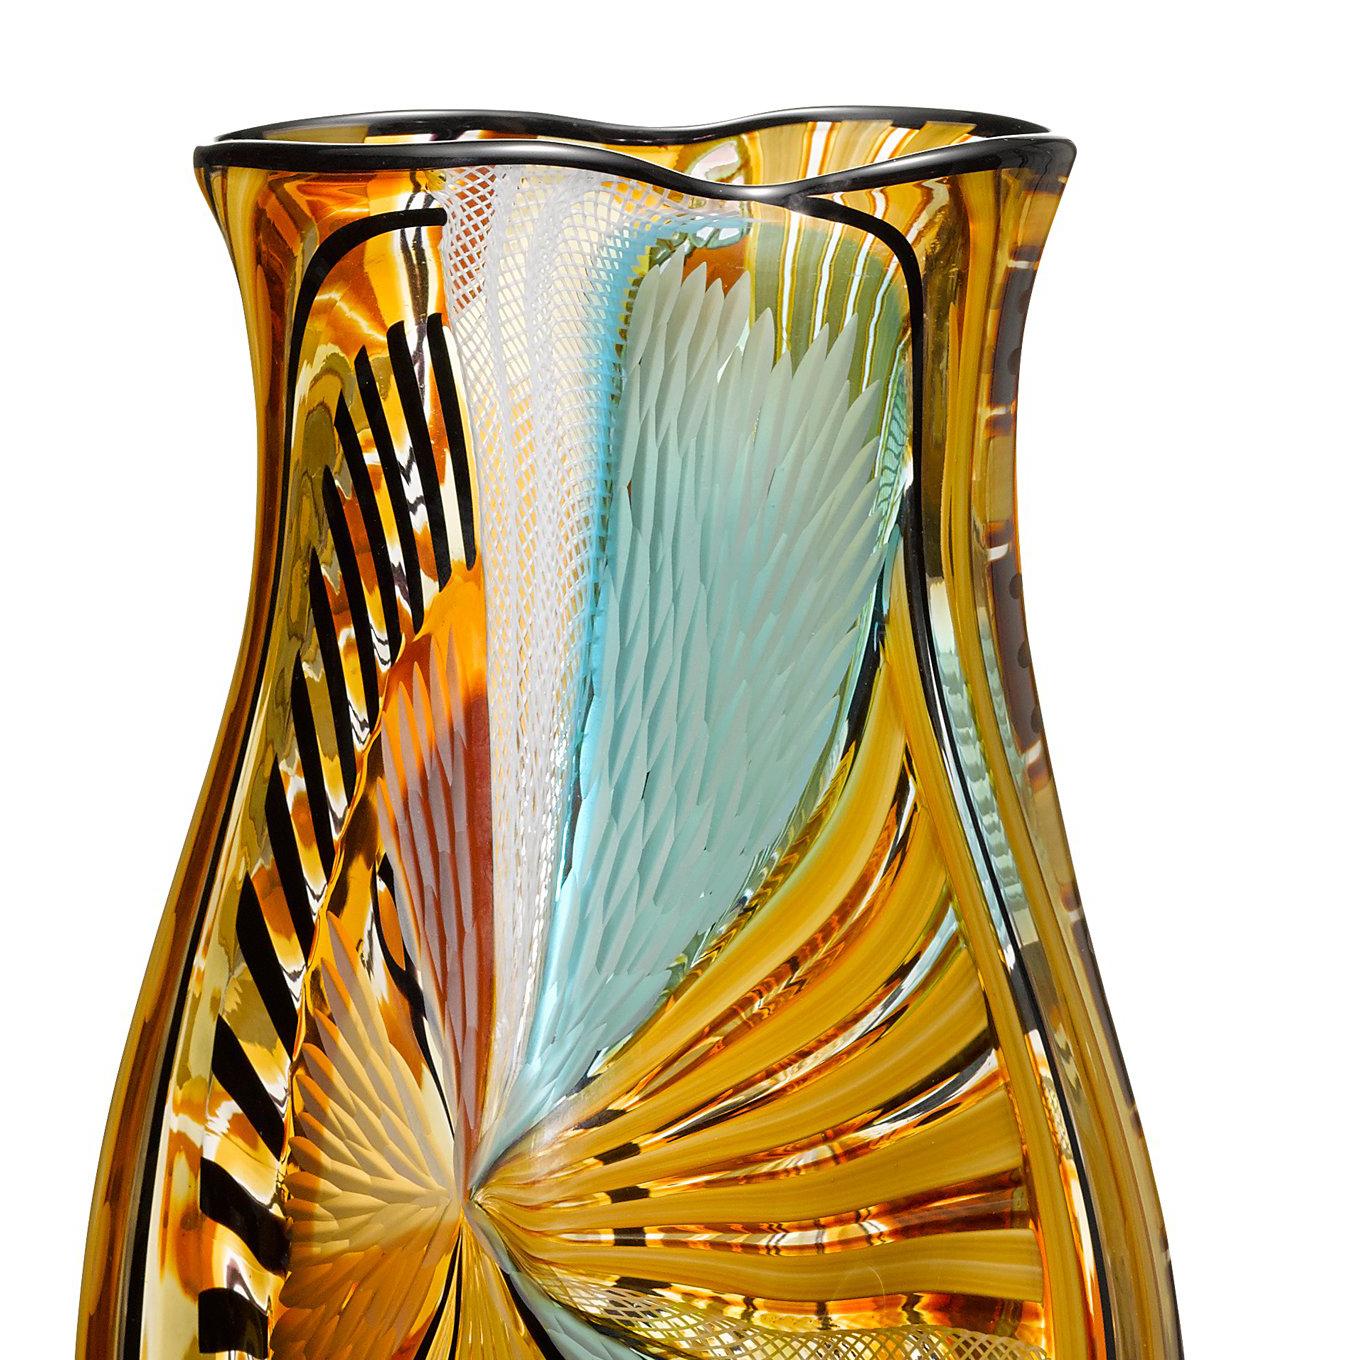 Einzigartige längliche Vase mit unregelmäßig geformter Mündung in traditioneller Muranoglasblas- und Kaltbearbeitungstechnik.
